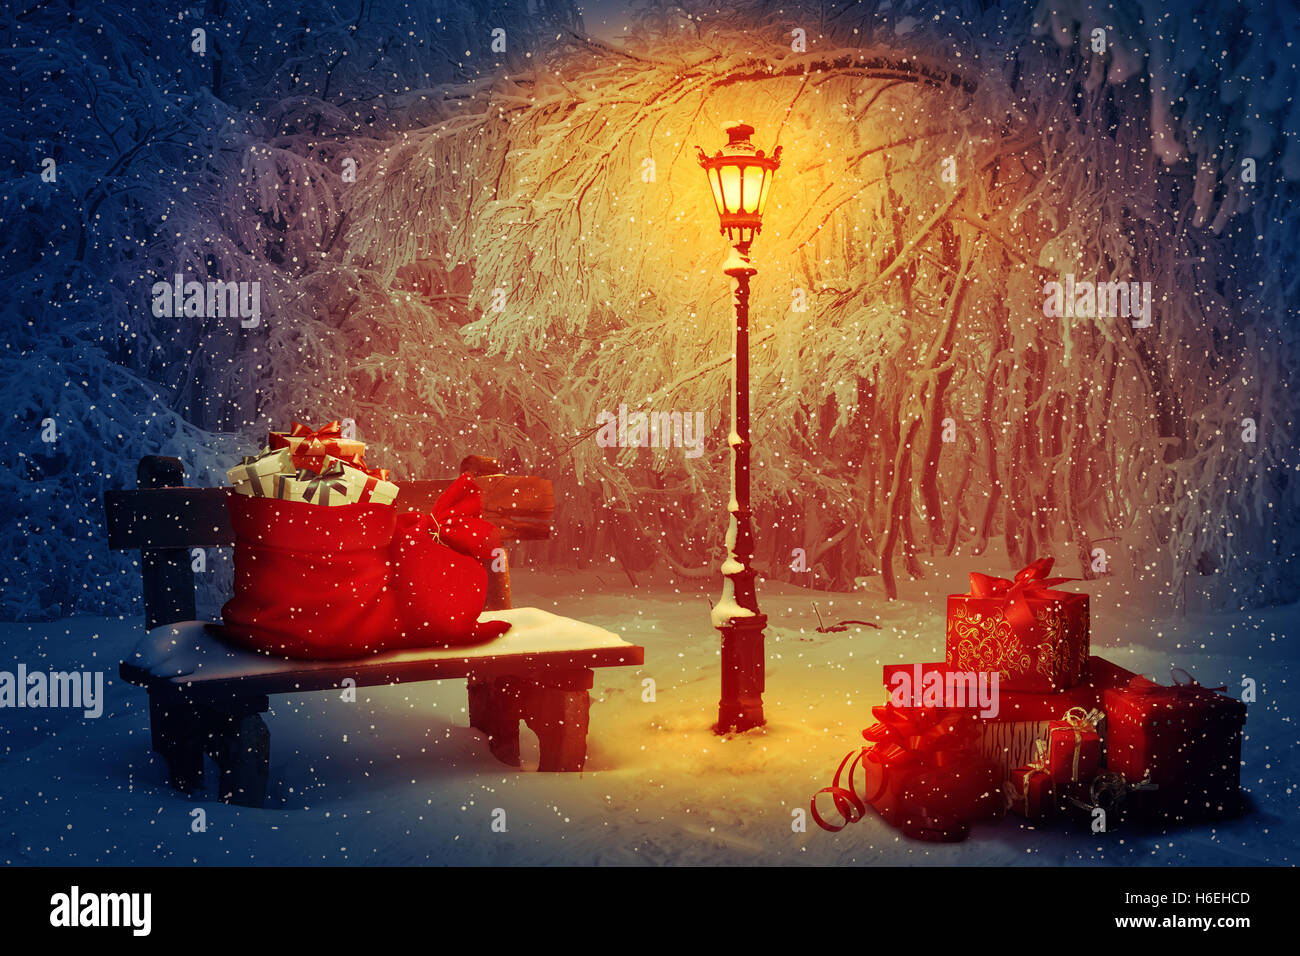 Beaucoup de cadeaux avec le Père Noël sacs dans le parc. Banc en bois et une lampe qui brille dans la nuit. Scène de Noël paisible et w Banque D'Images